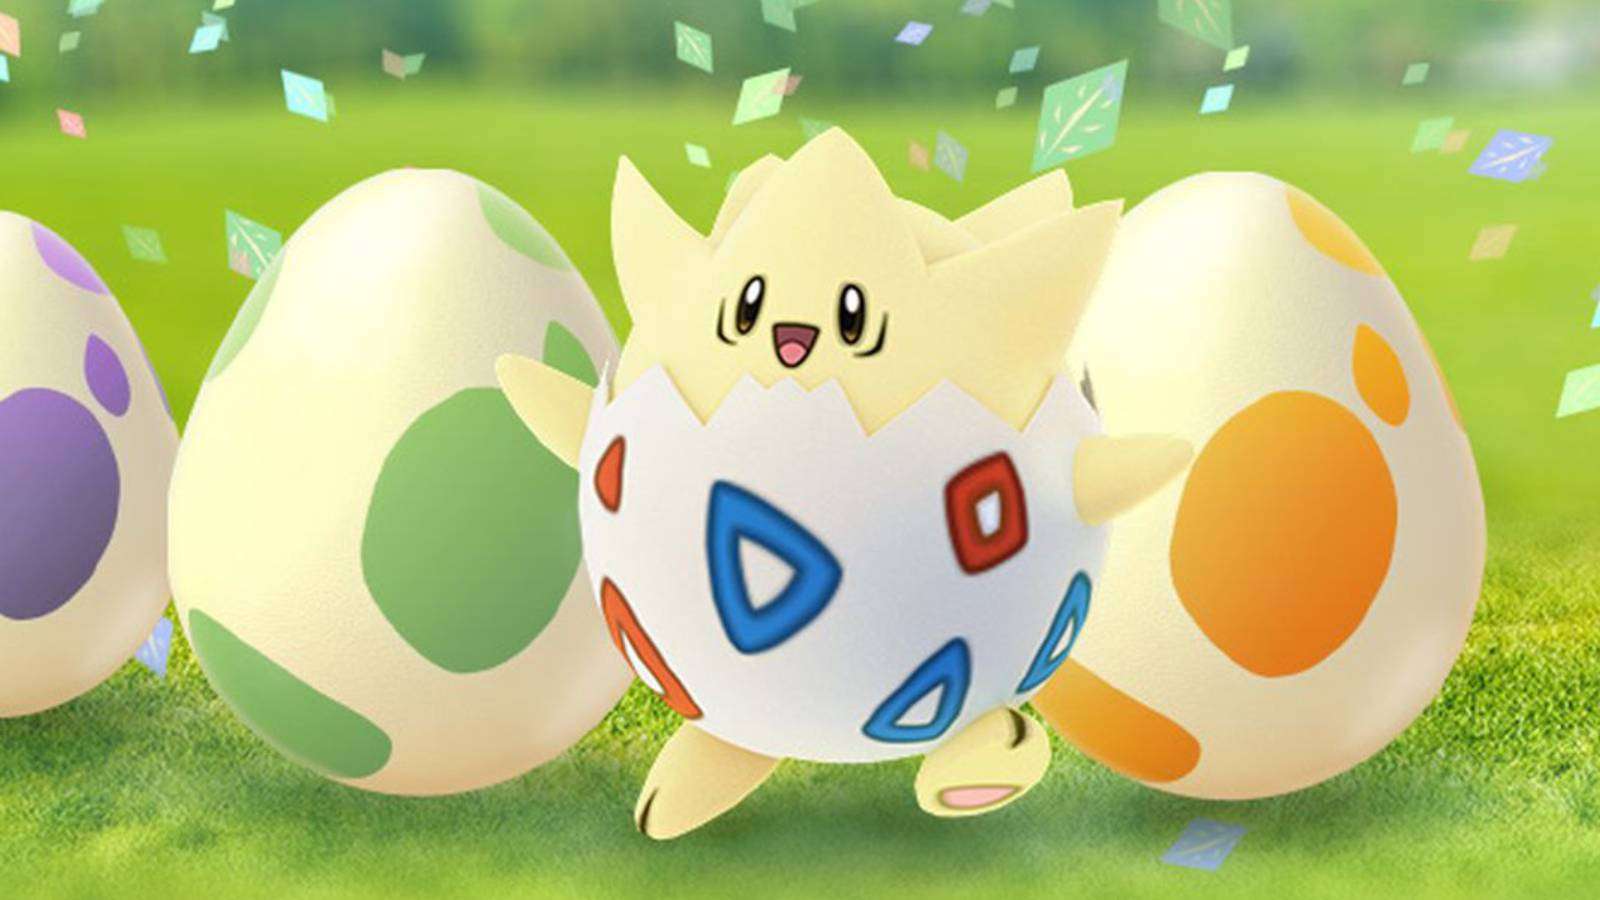 The Pokemon Togepi appears alongside some eggs in Pokemon Go key art